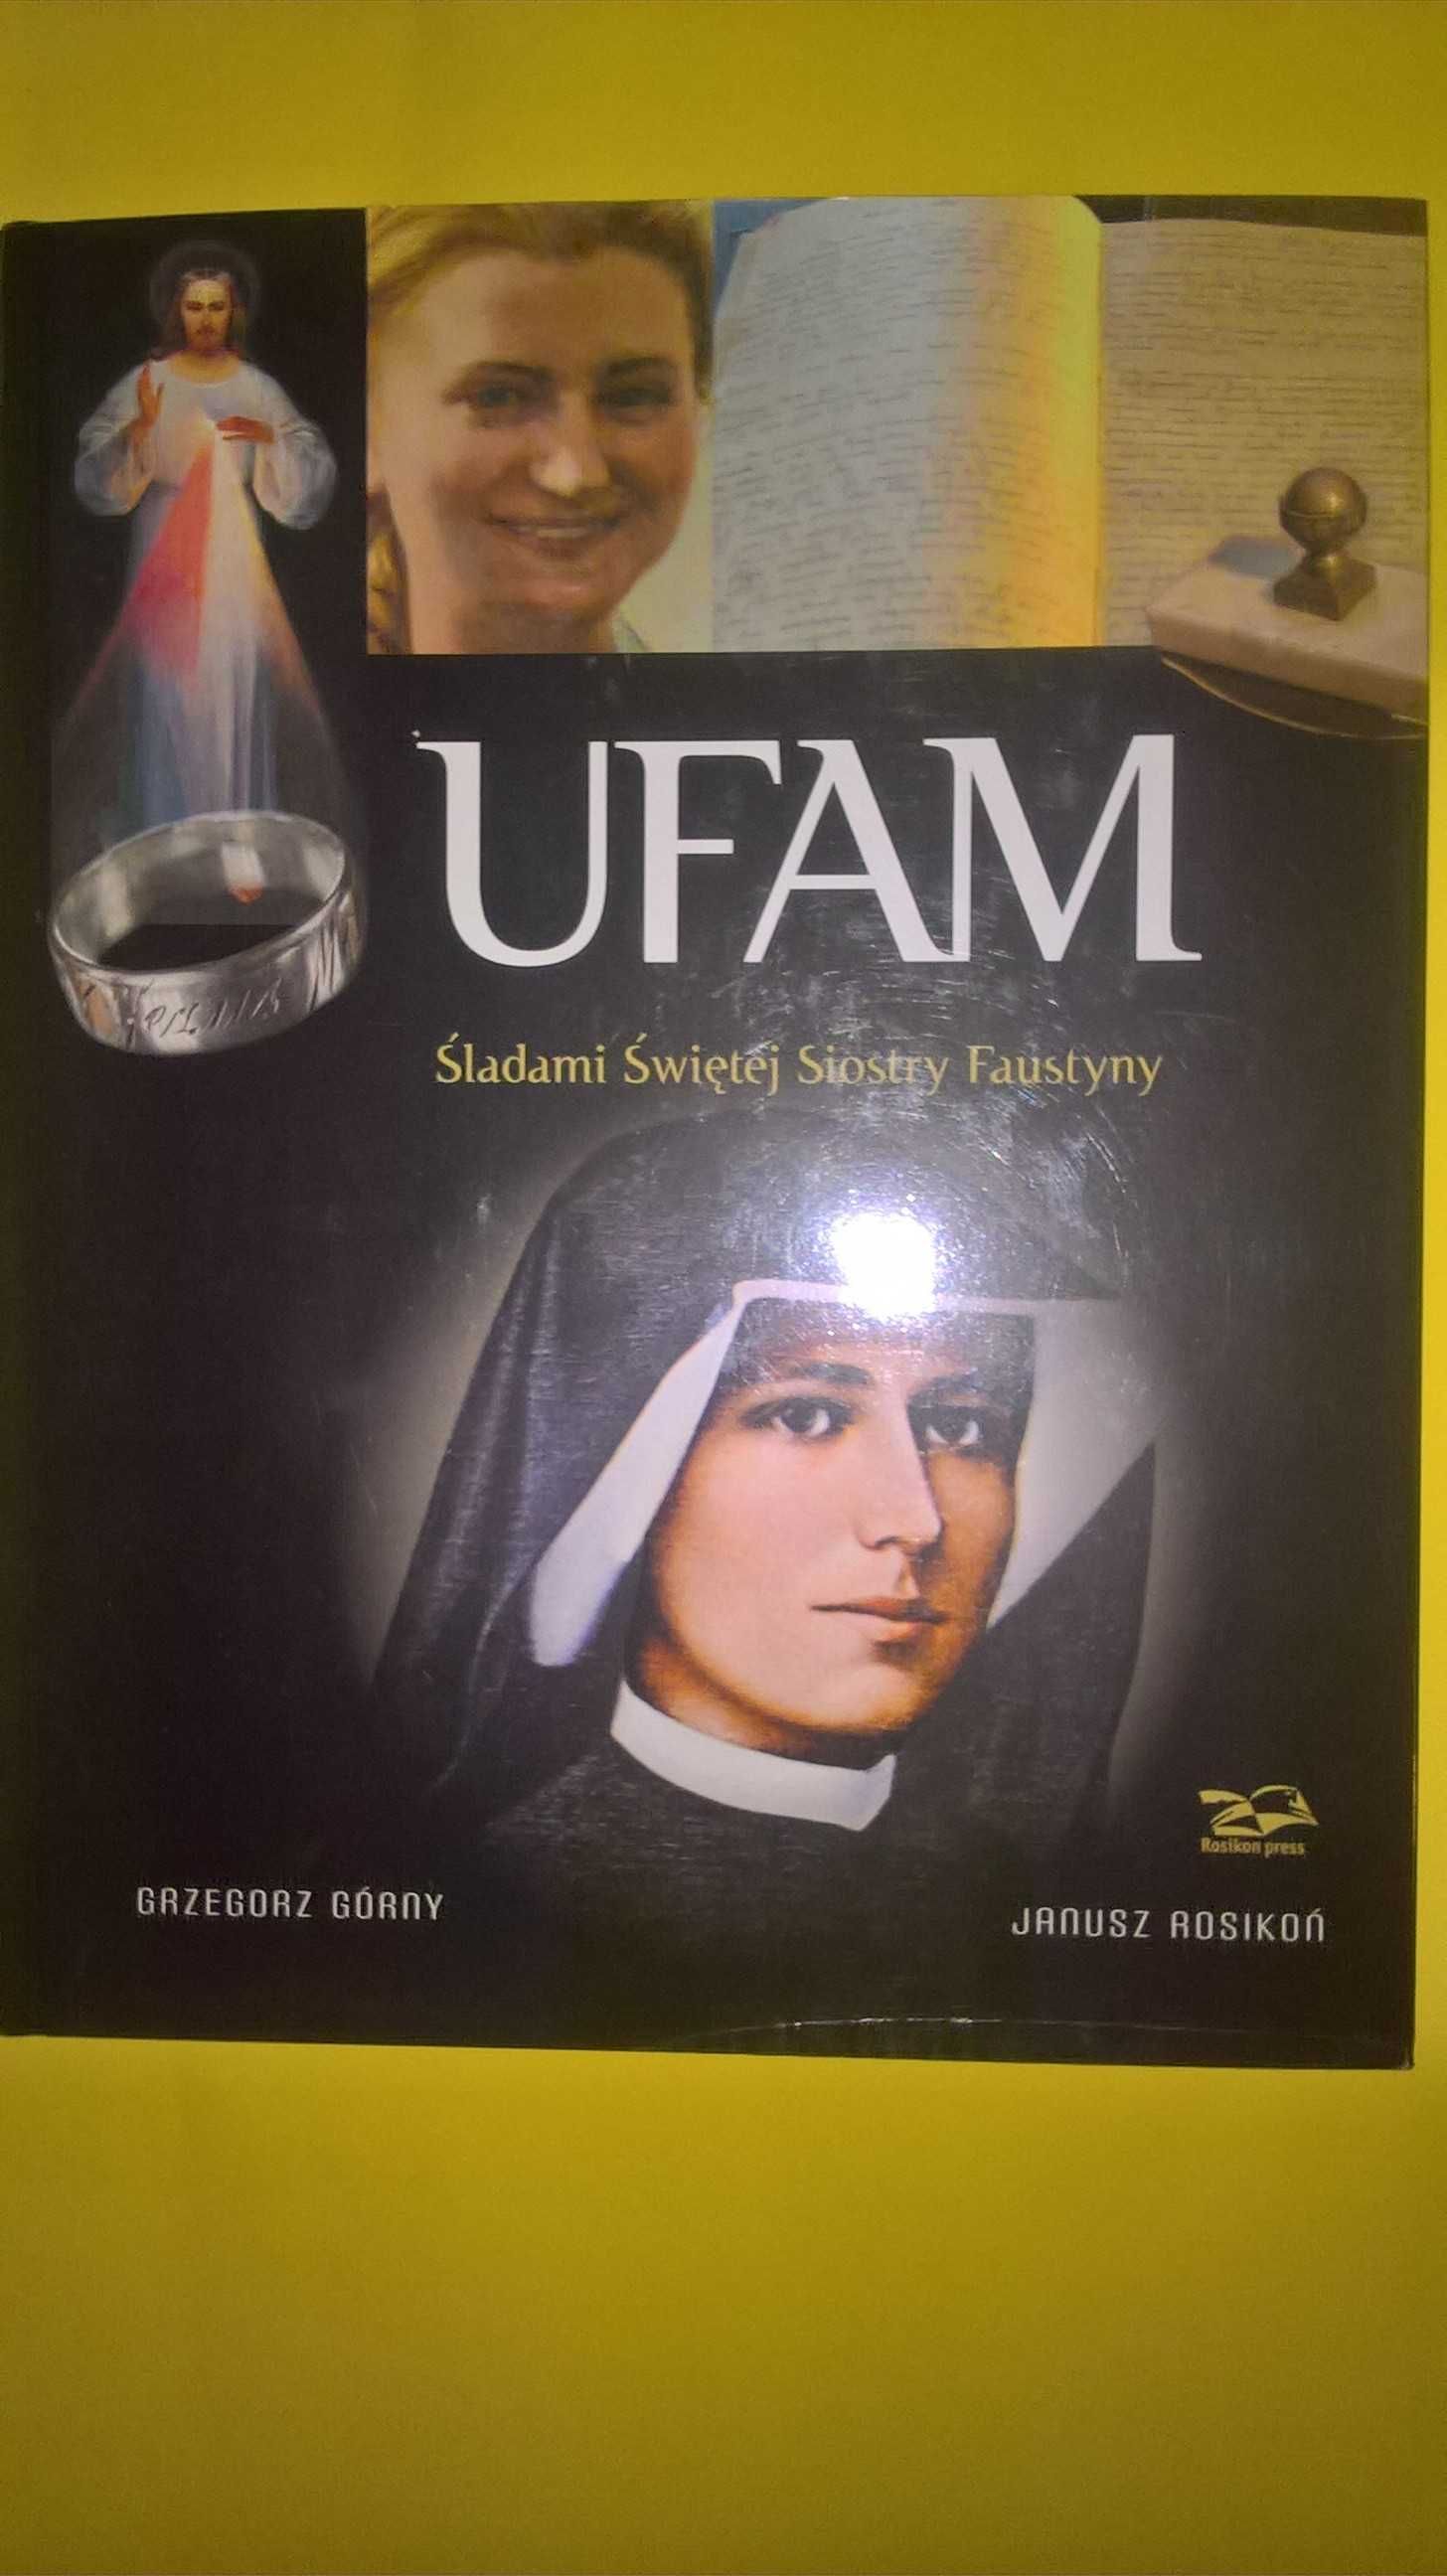 Ufam Śladami Siostry Faustyny
Grzegorz Górny